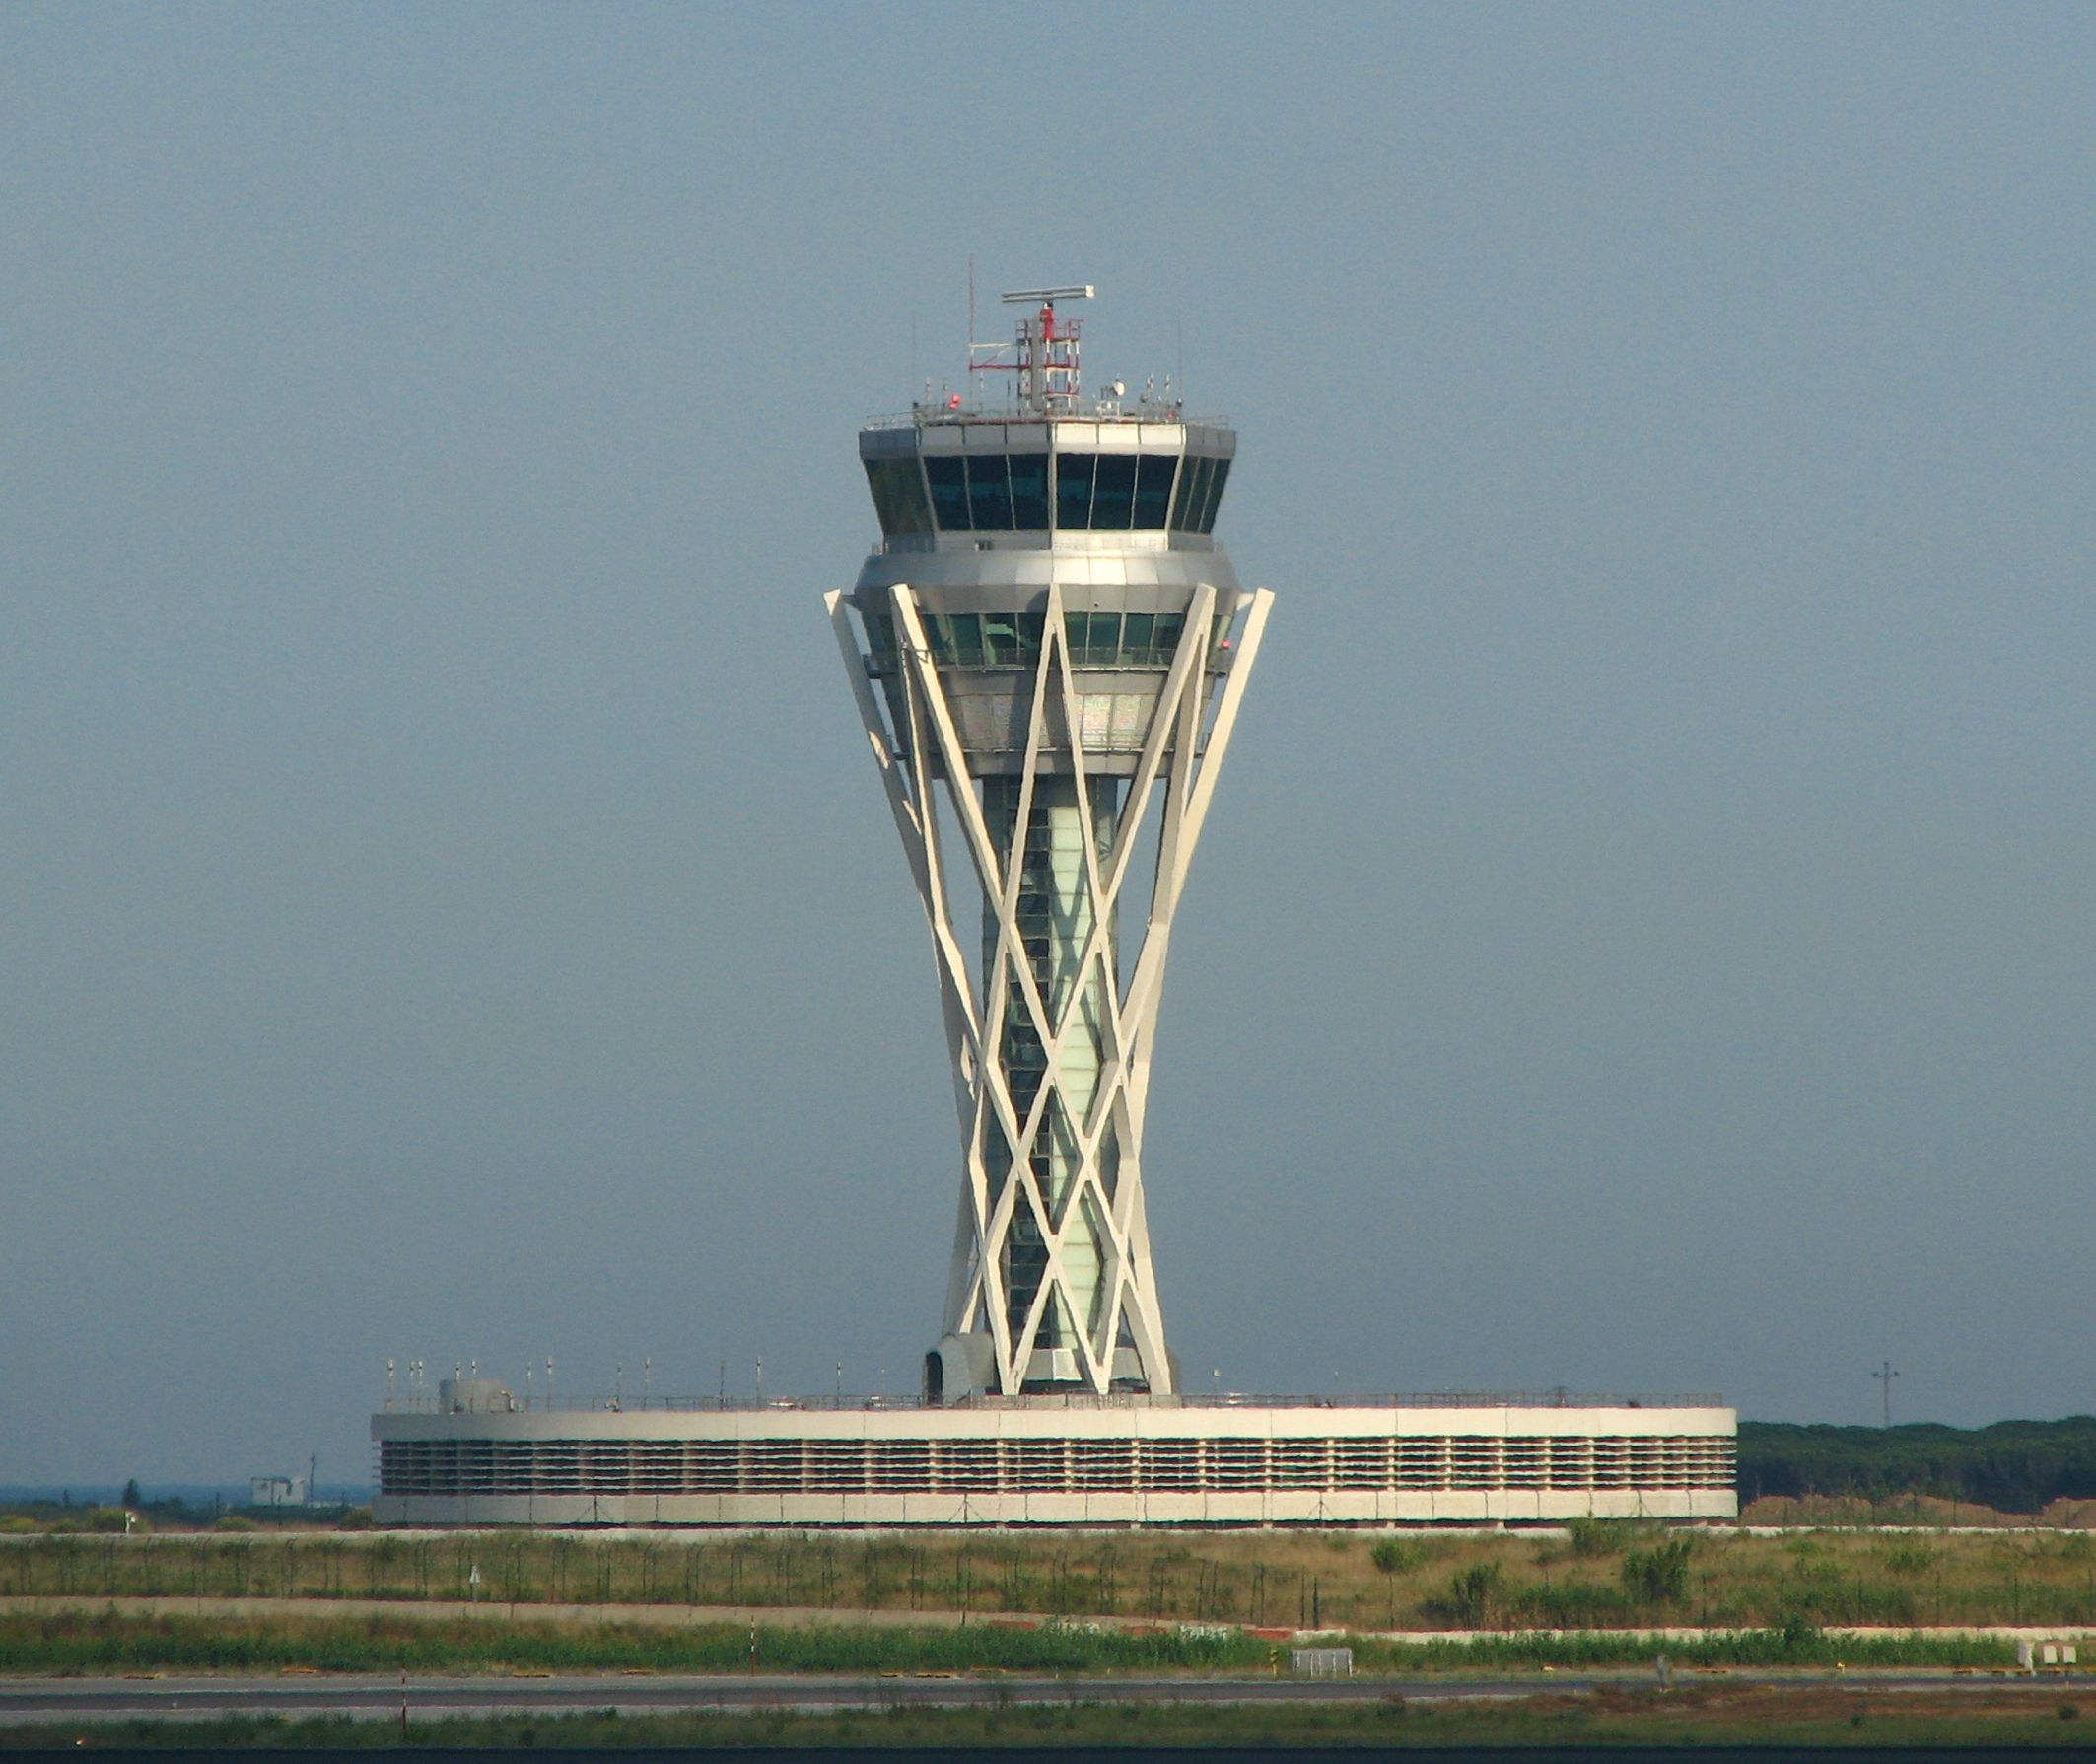 BCN ATC tower